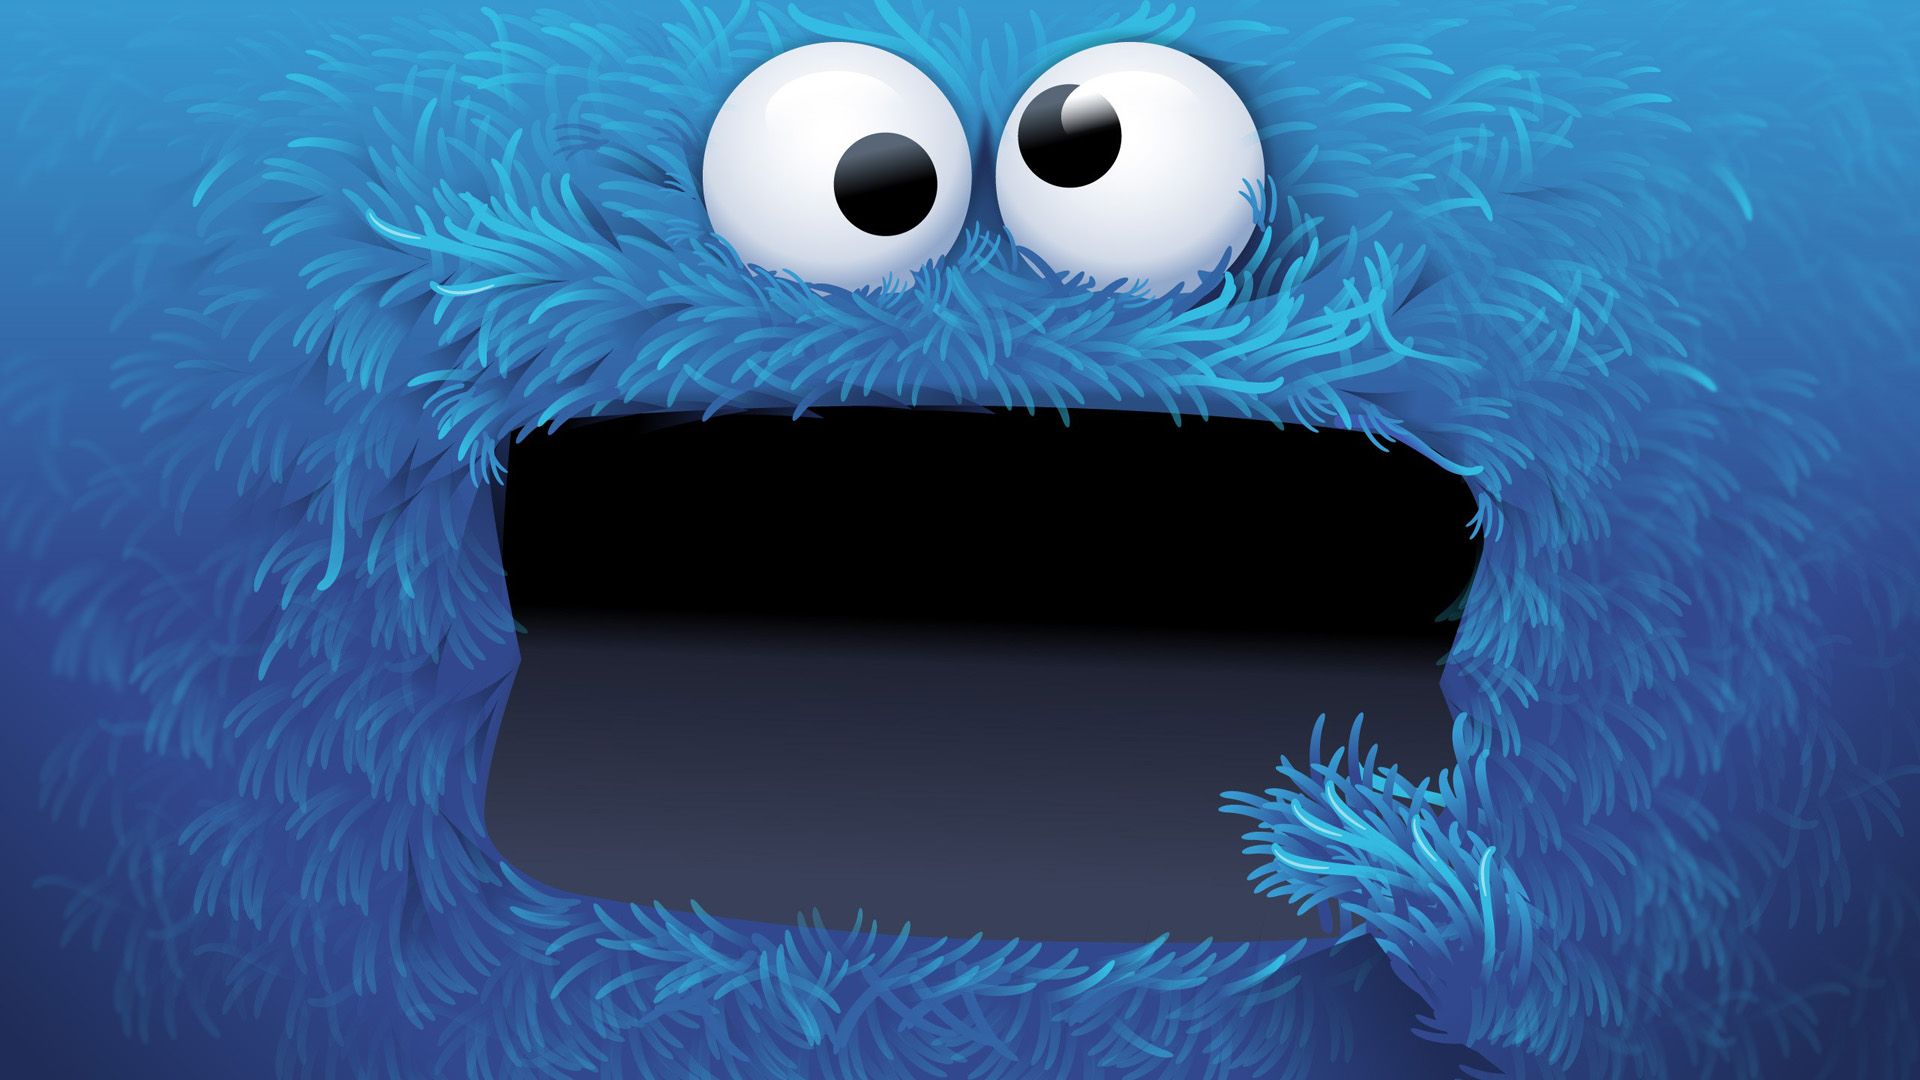 Cookie Monster HD Wallpaper FullHDwpp Full